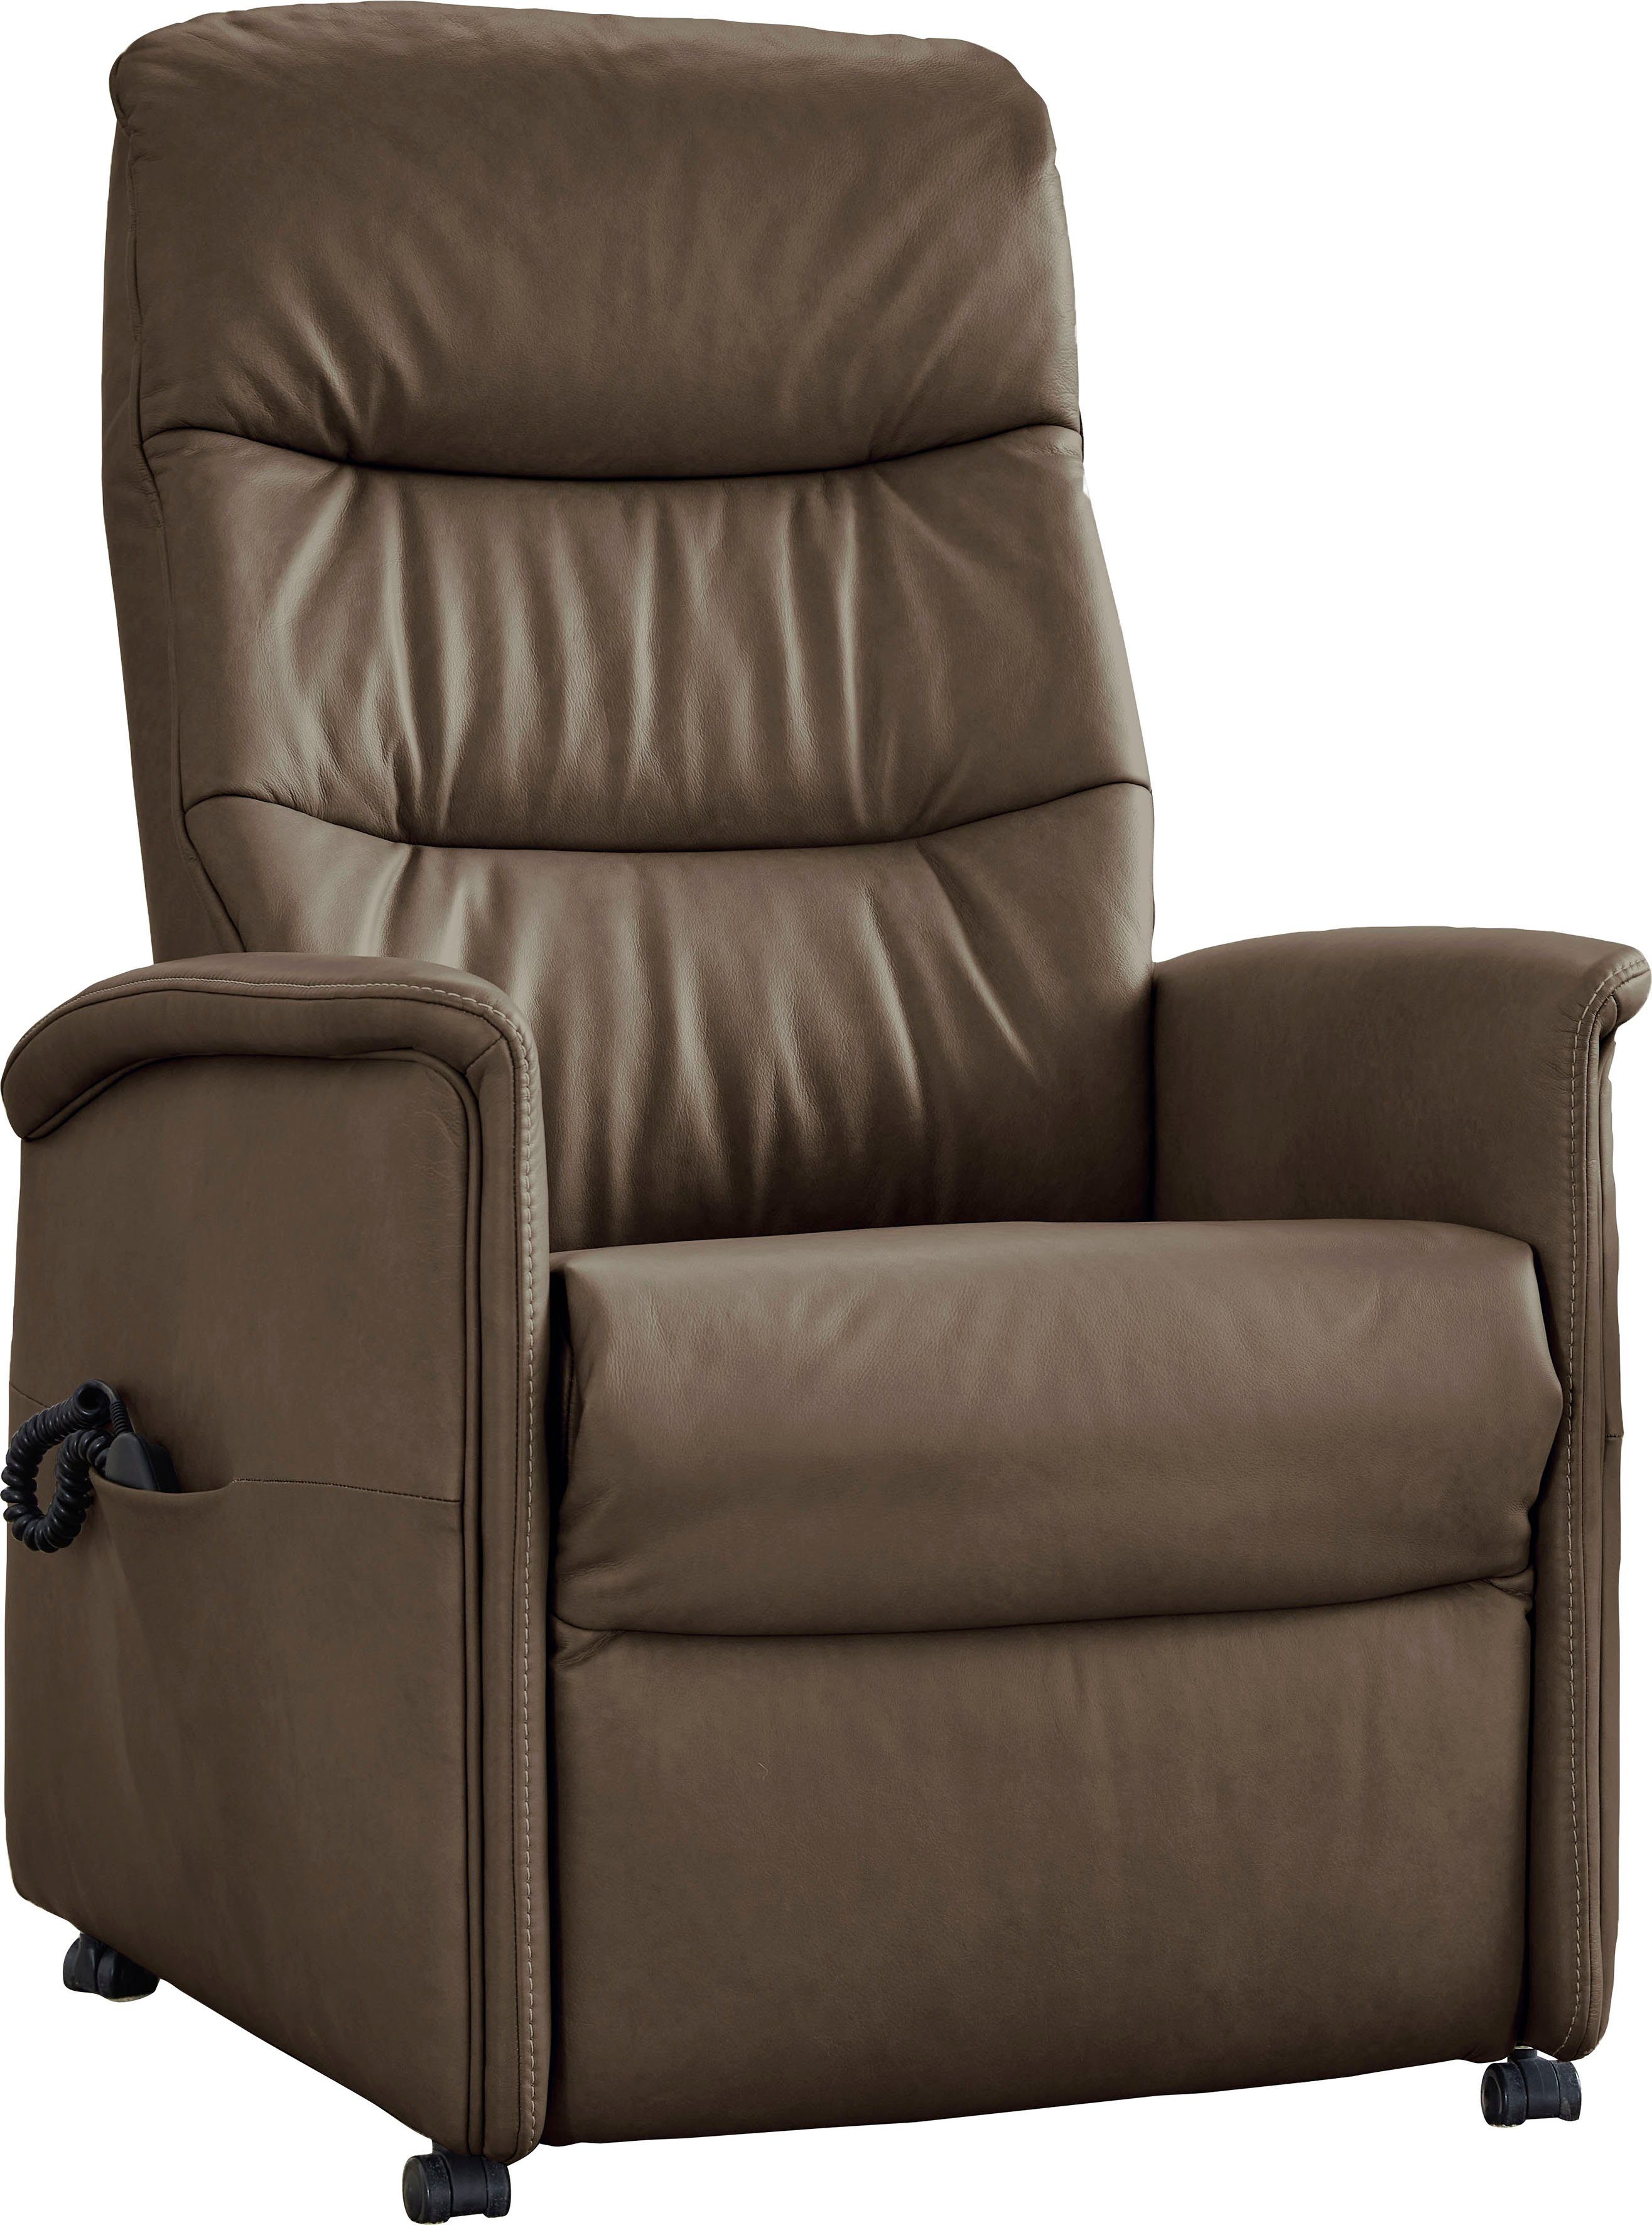 himolla Relaxsessel himolla 9051, in 3 Sitzhöhen, manuell oder elektrisch verstellbar, Aufstehhilfe